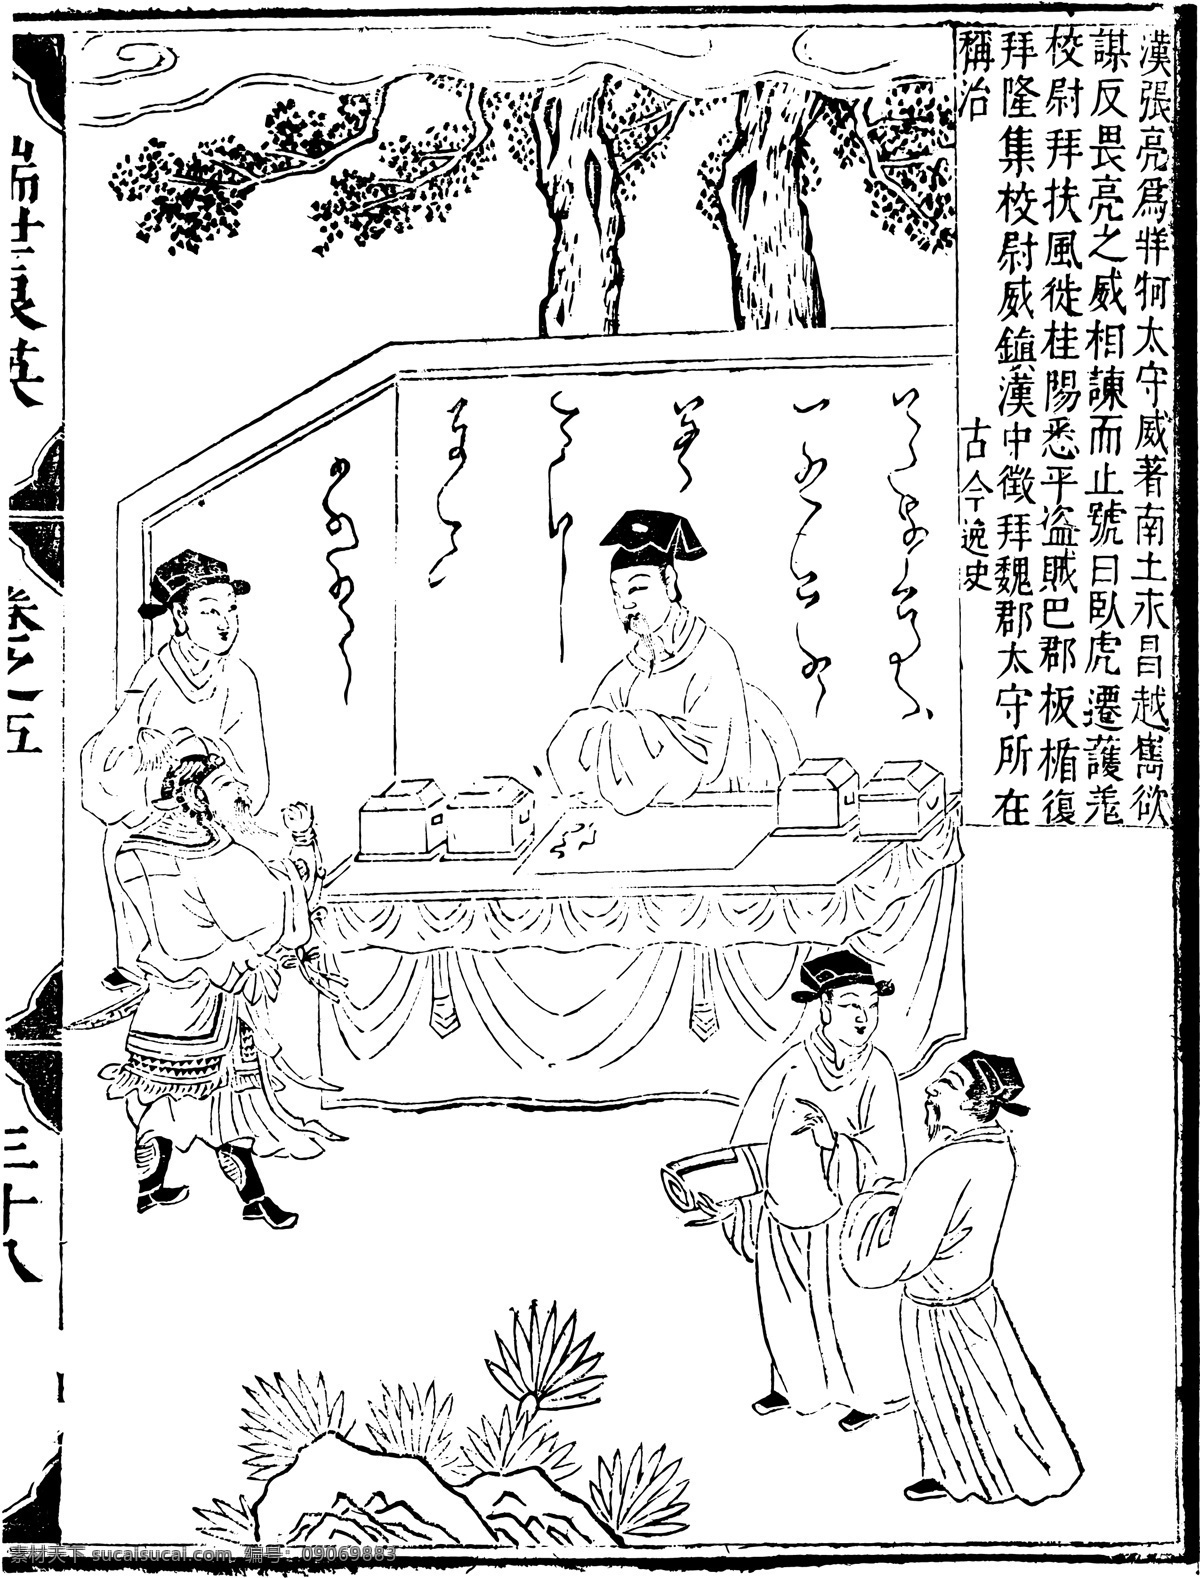 瑞世良英 木刻版画 中国 传统文化 81 中国传统文化 设计素材 版画世界 书画美术 白色